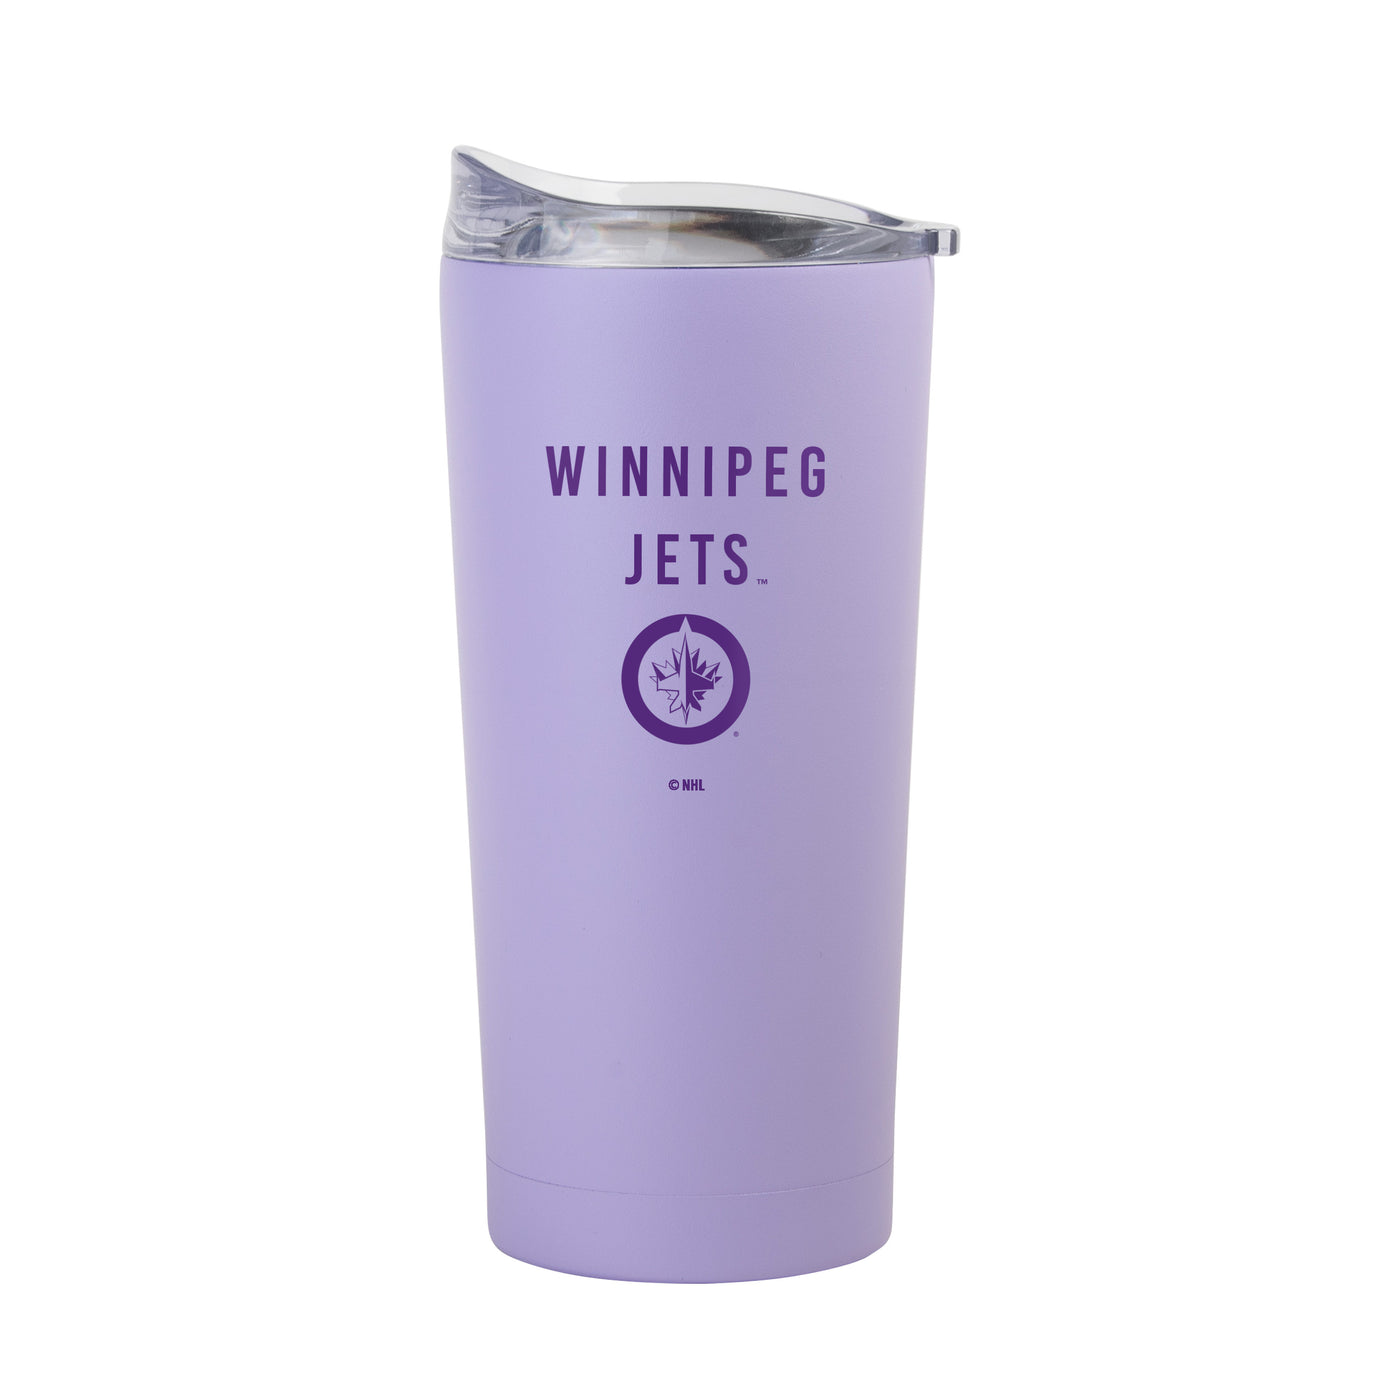 Winnipeg Jets 20oz Tonal Lavender Powder Coat Tumbler